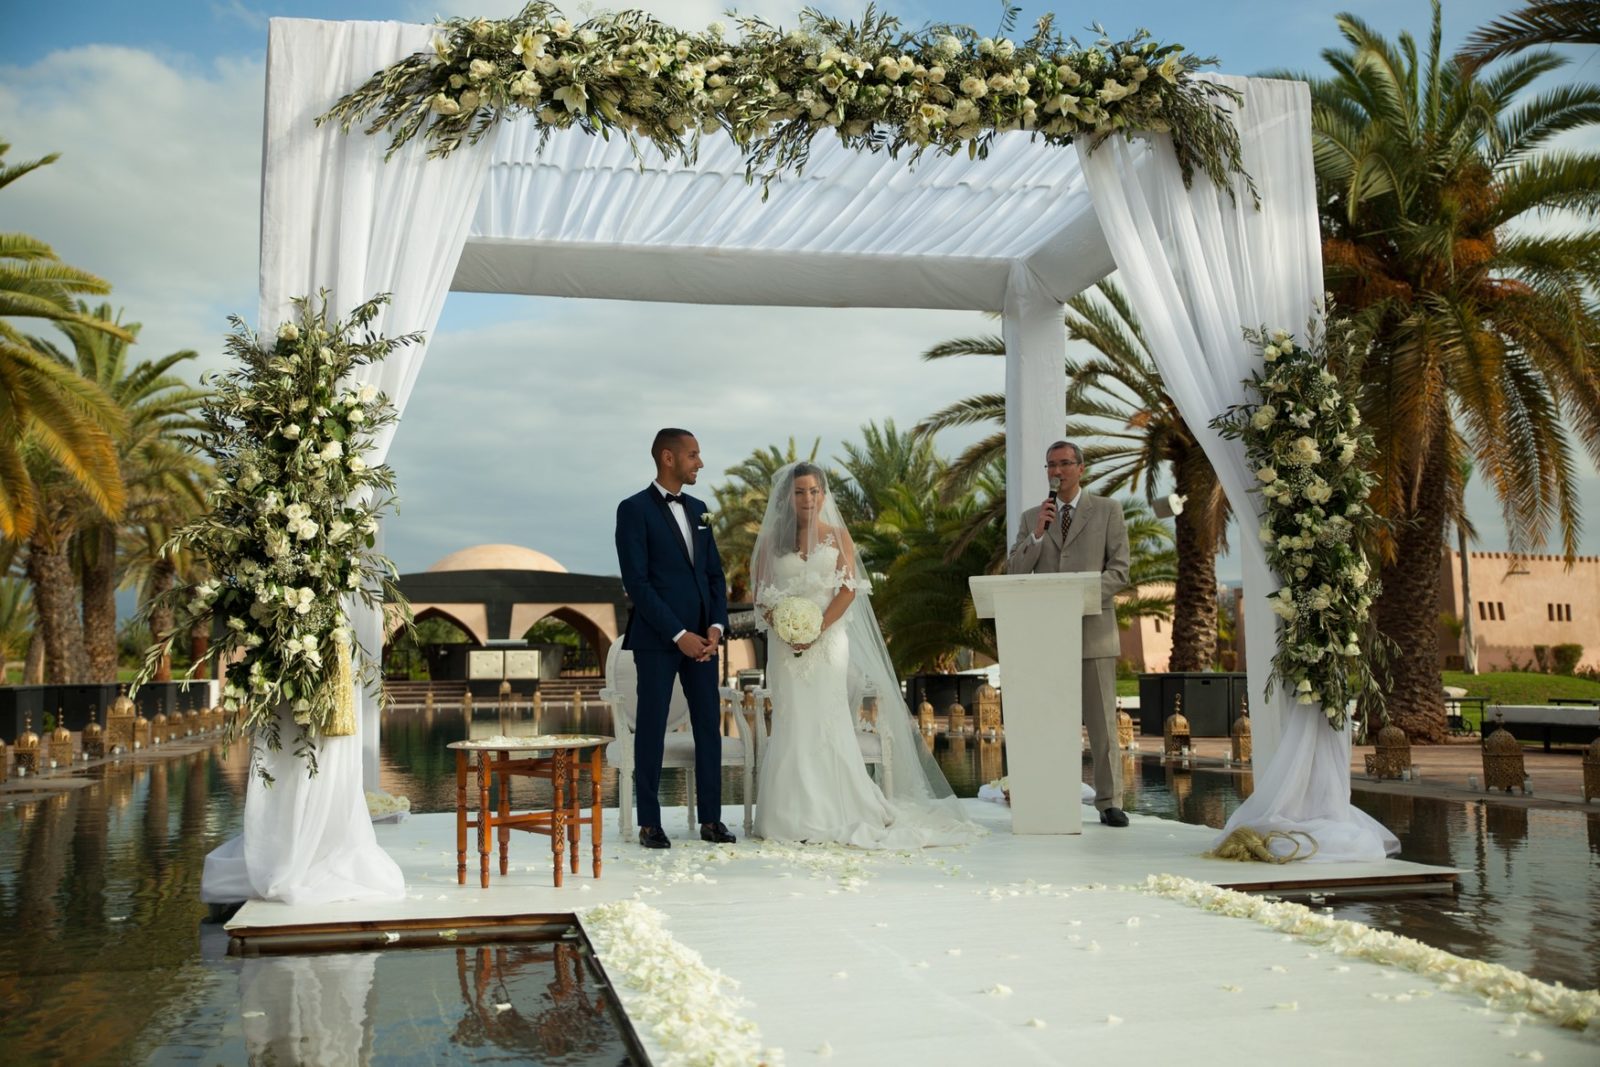 Amine et Jad mariage oatlas marrakech 2019